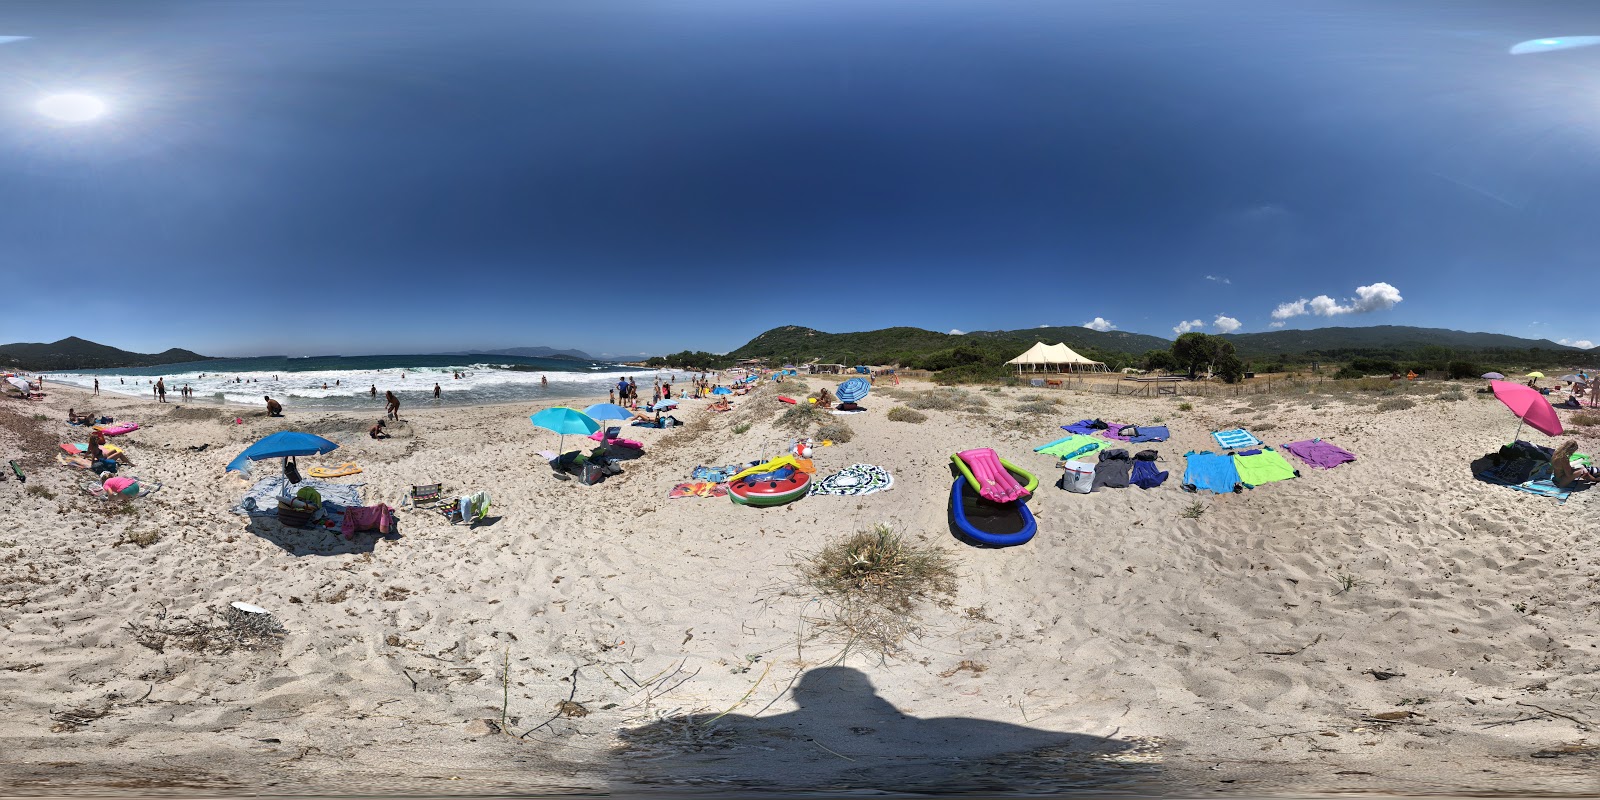 Fotografija Ruppione beach priljubljeno mesto med poznavalci sprostitve